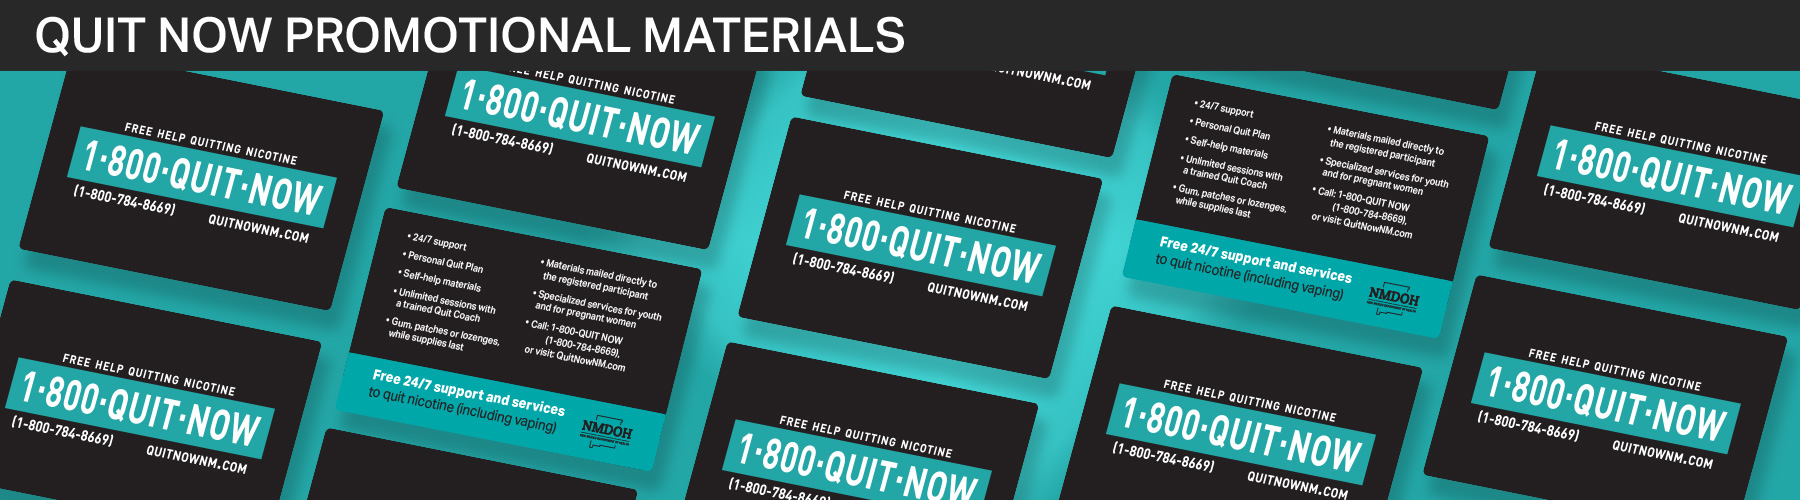 Quit Now Promo Materials Slide